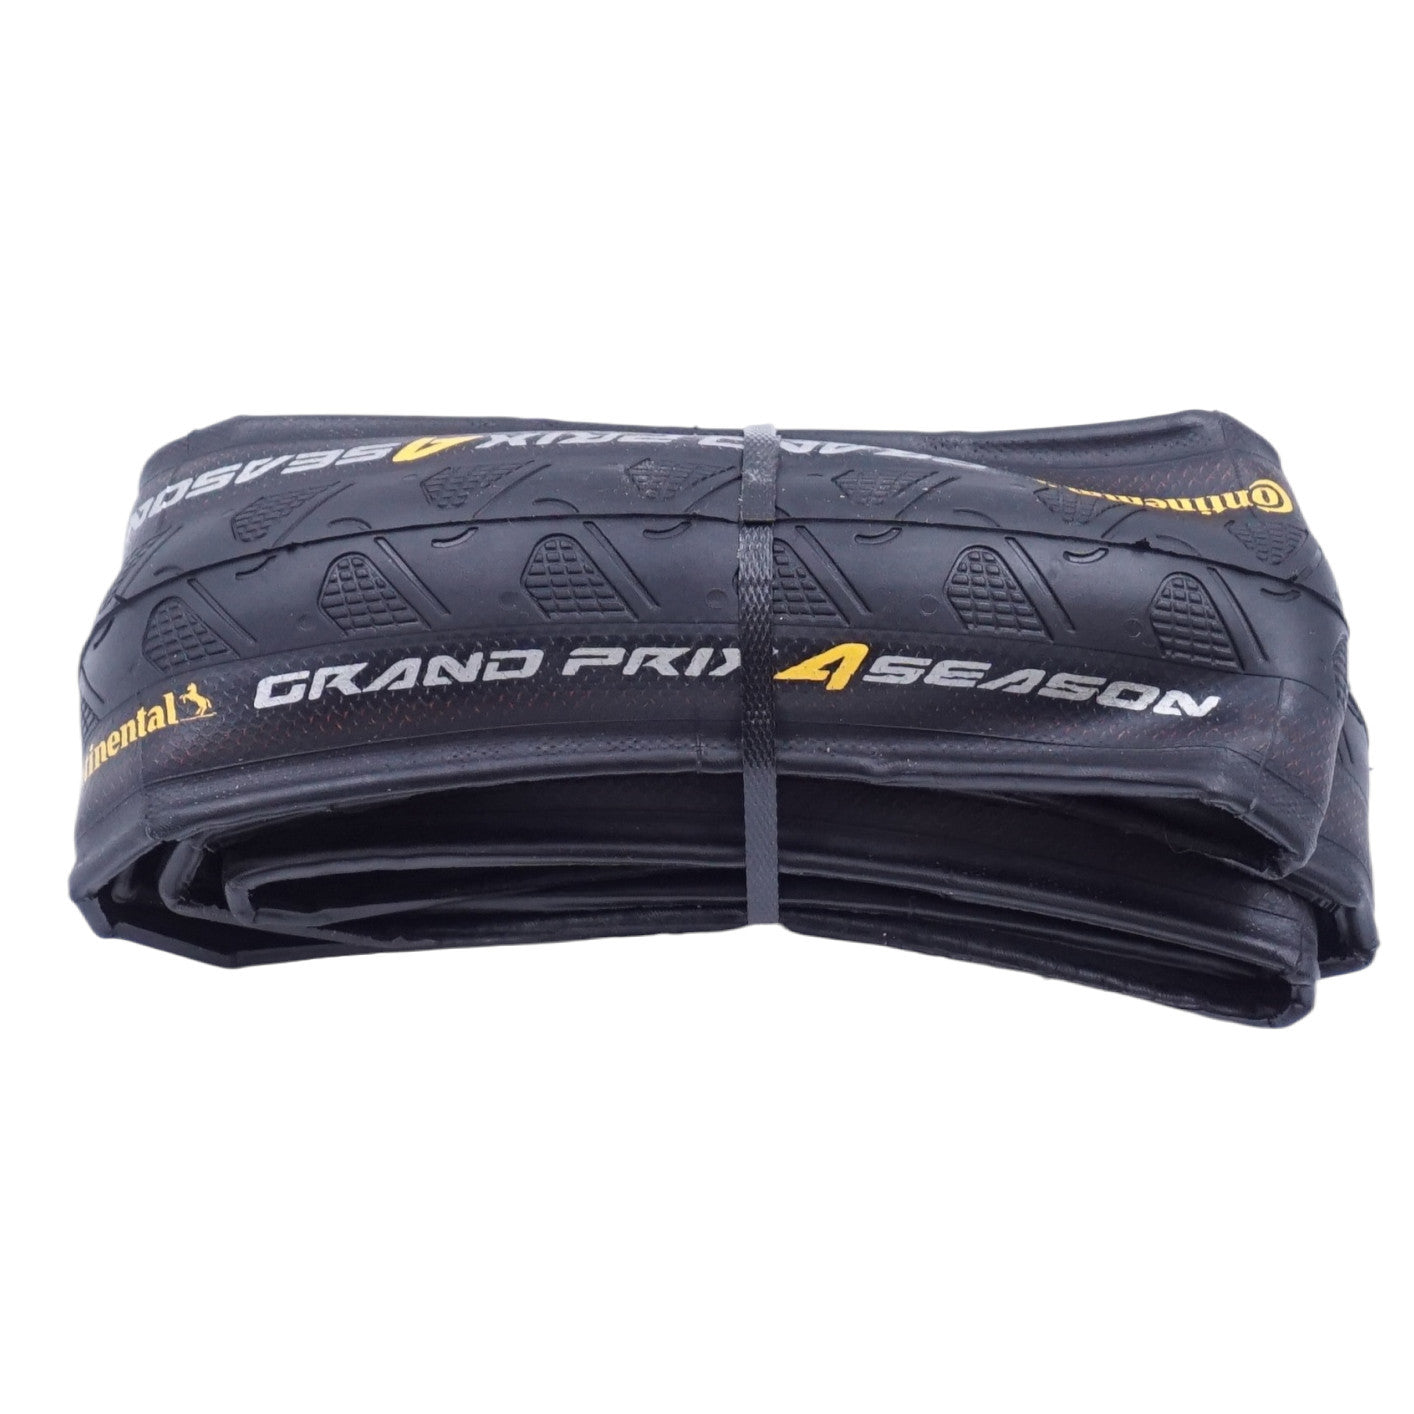 Continental Grand Prix 4 Season All Weather 700c Tire